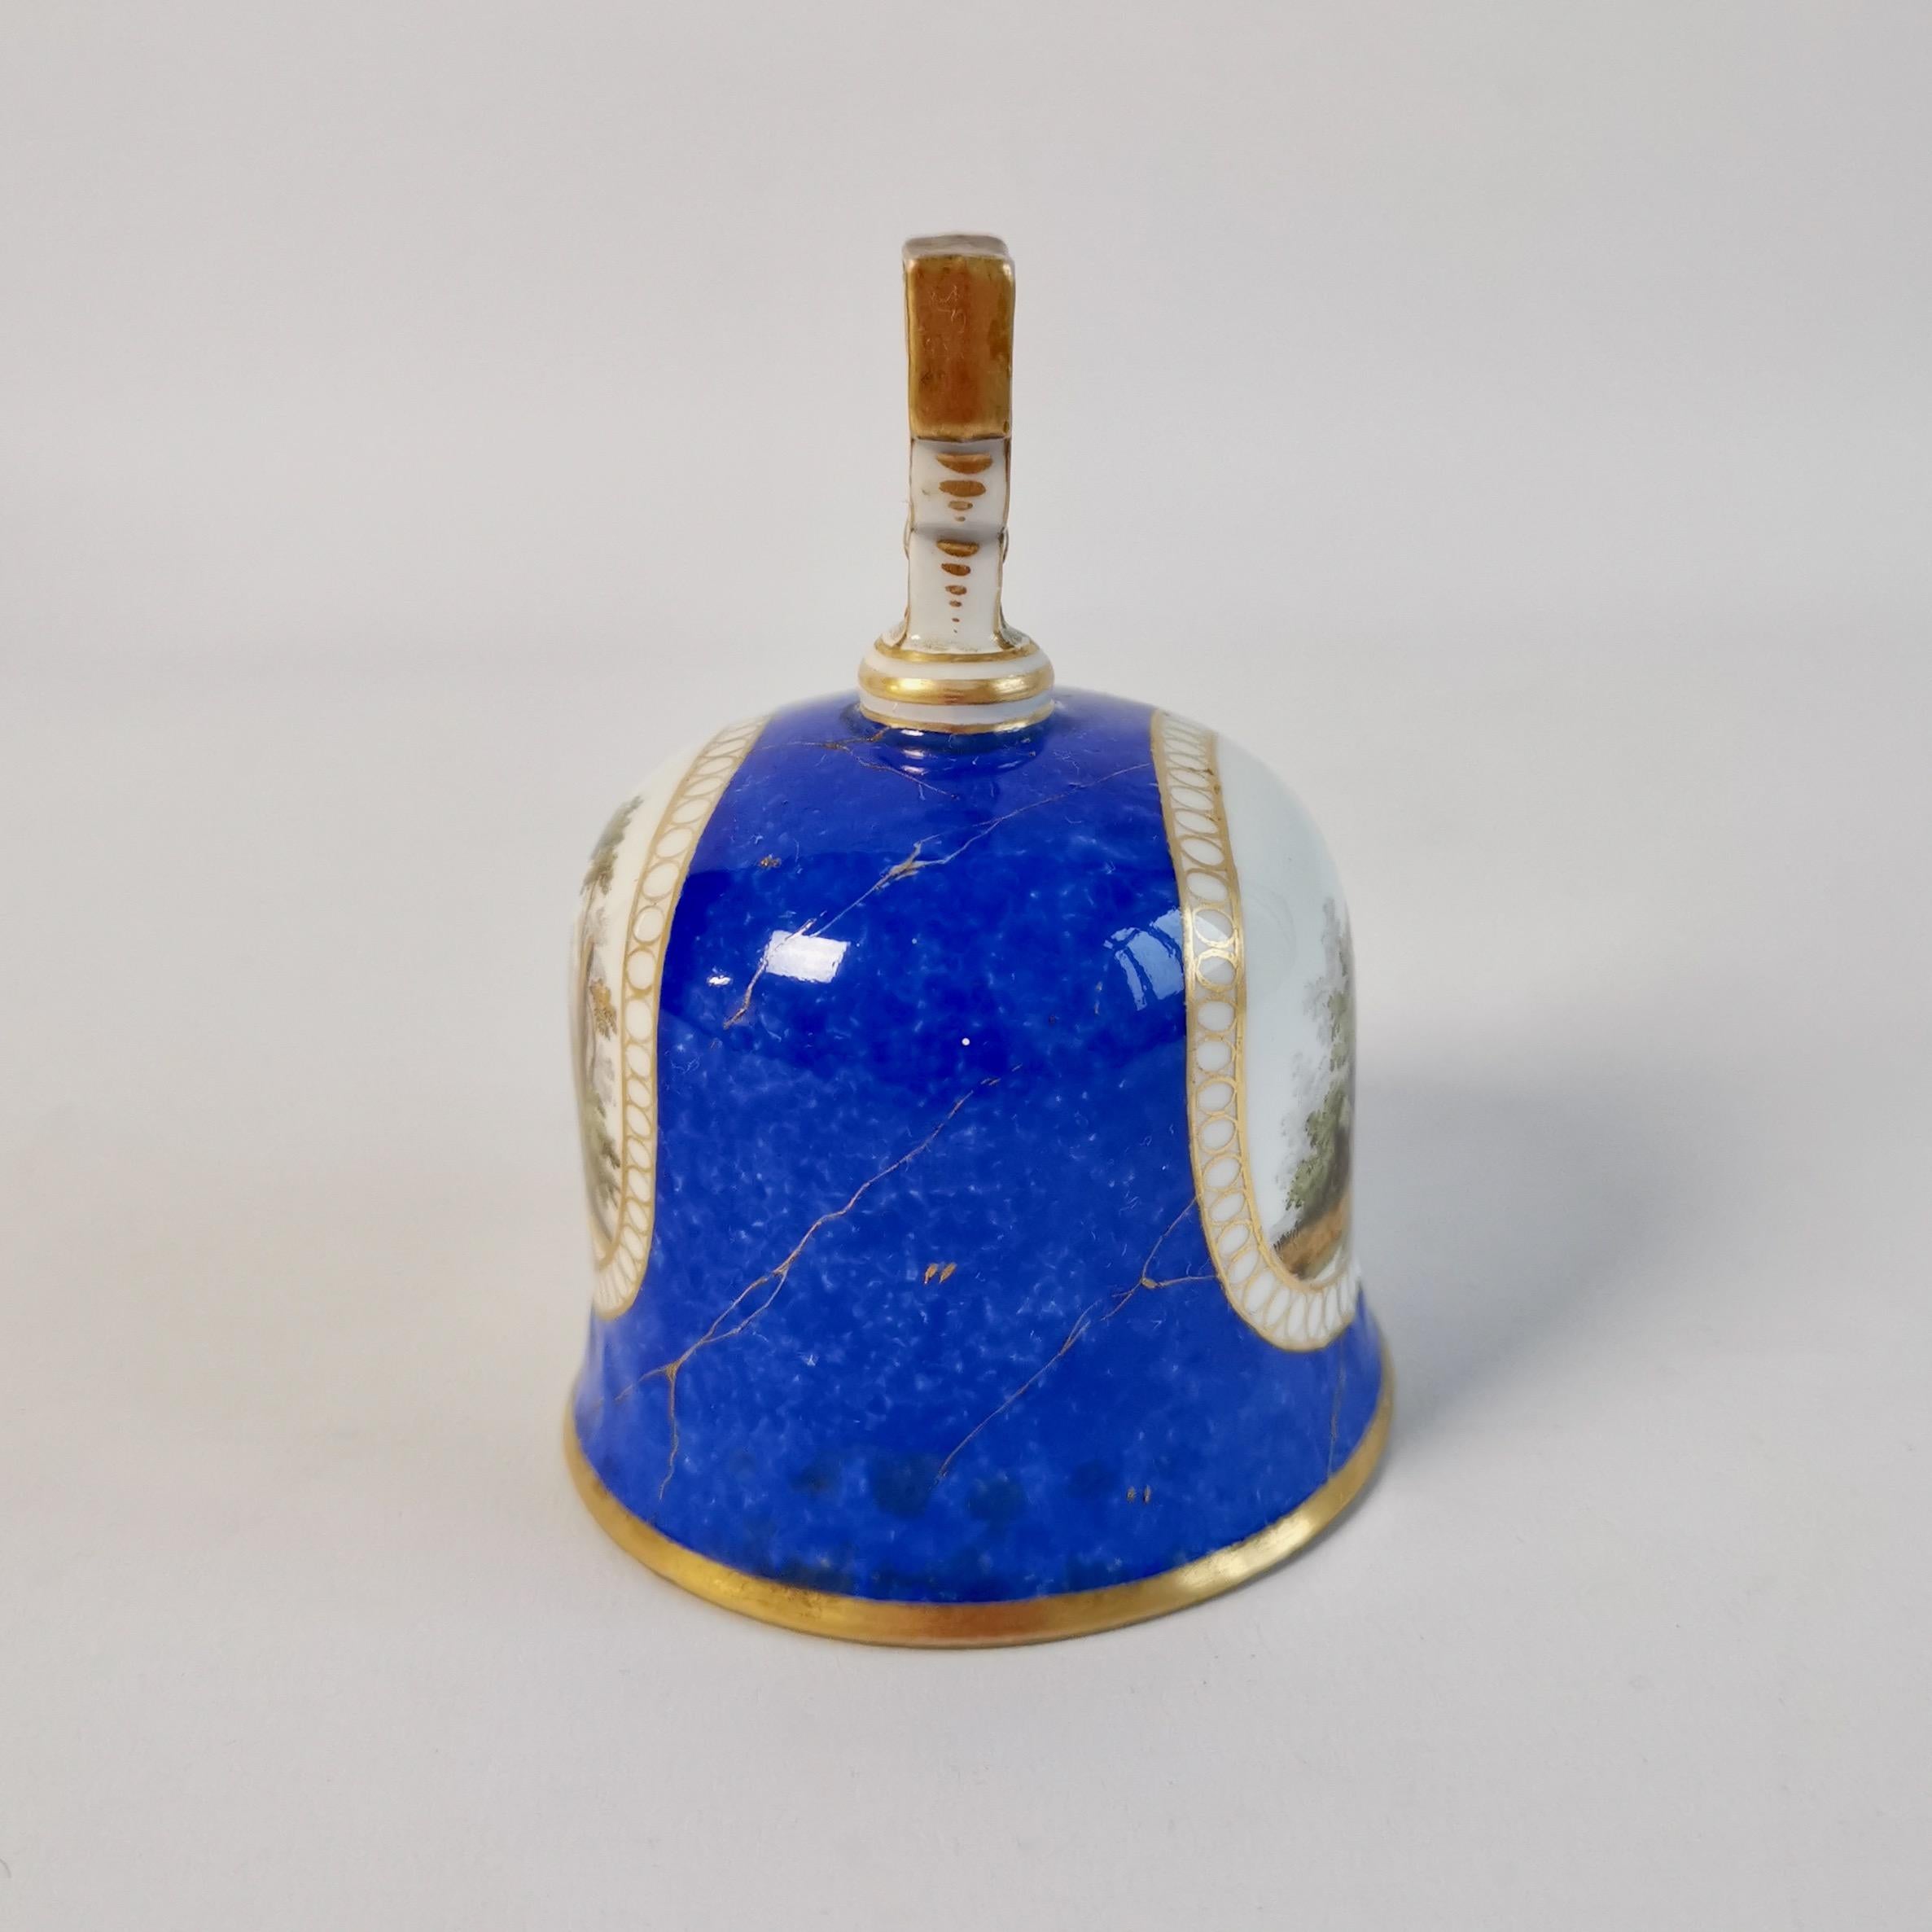 Biedermeier Meissen Porcelain Table Bell, Blue with Romantic Scenes, 19th C